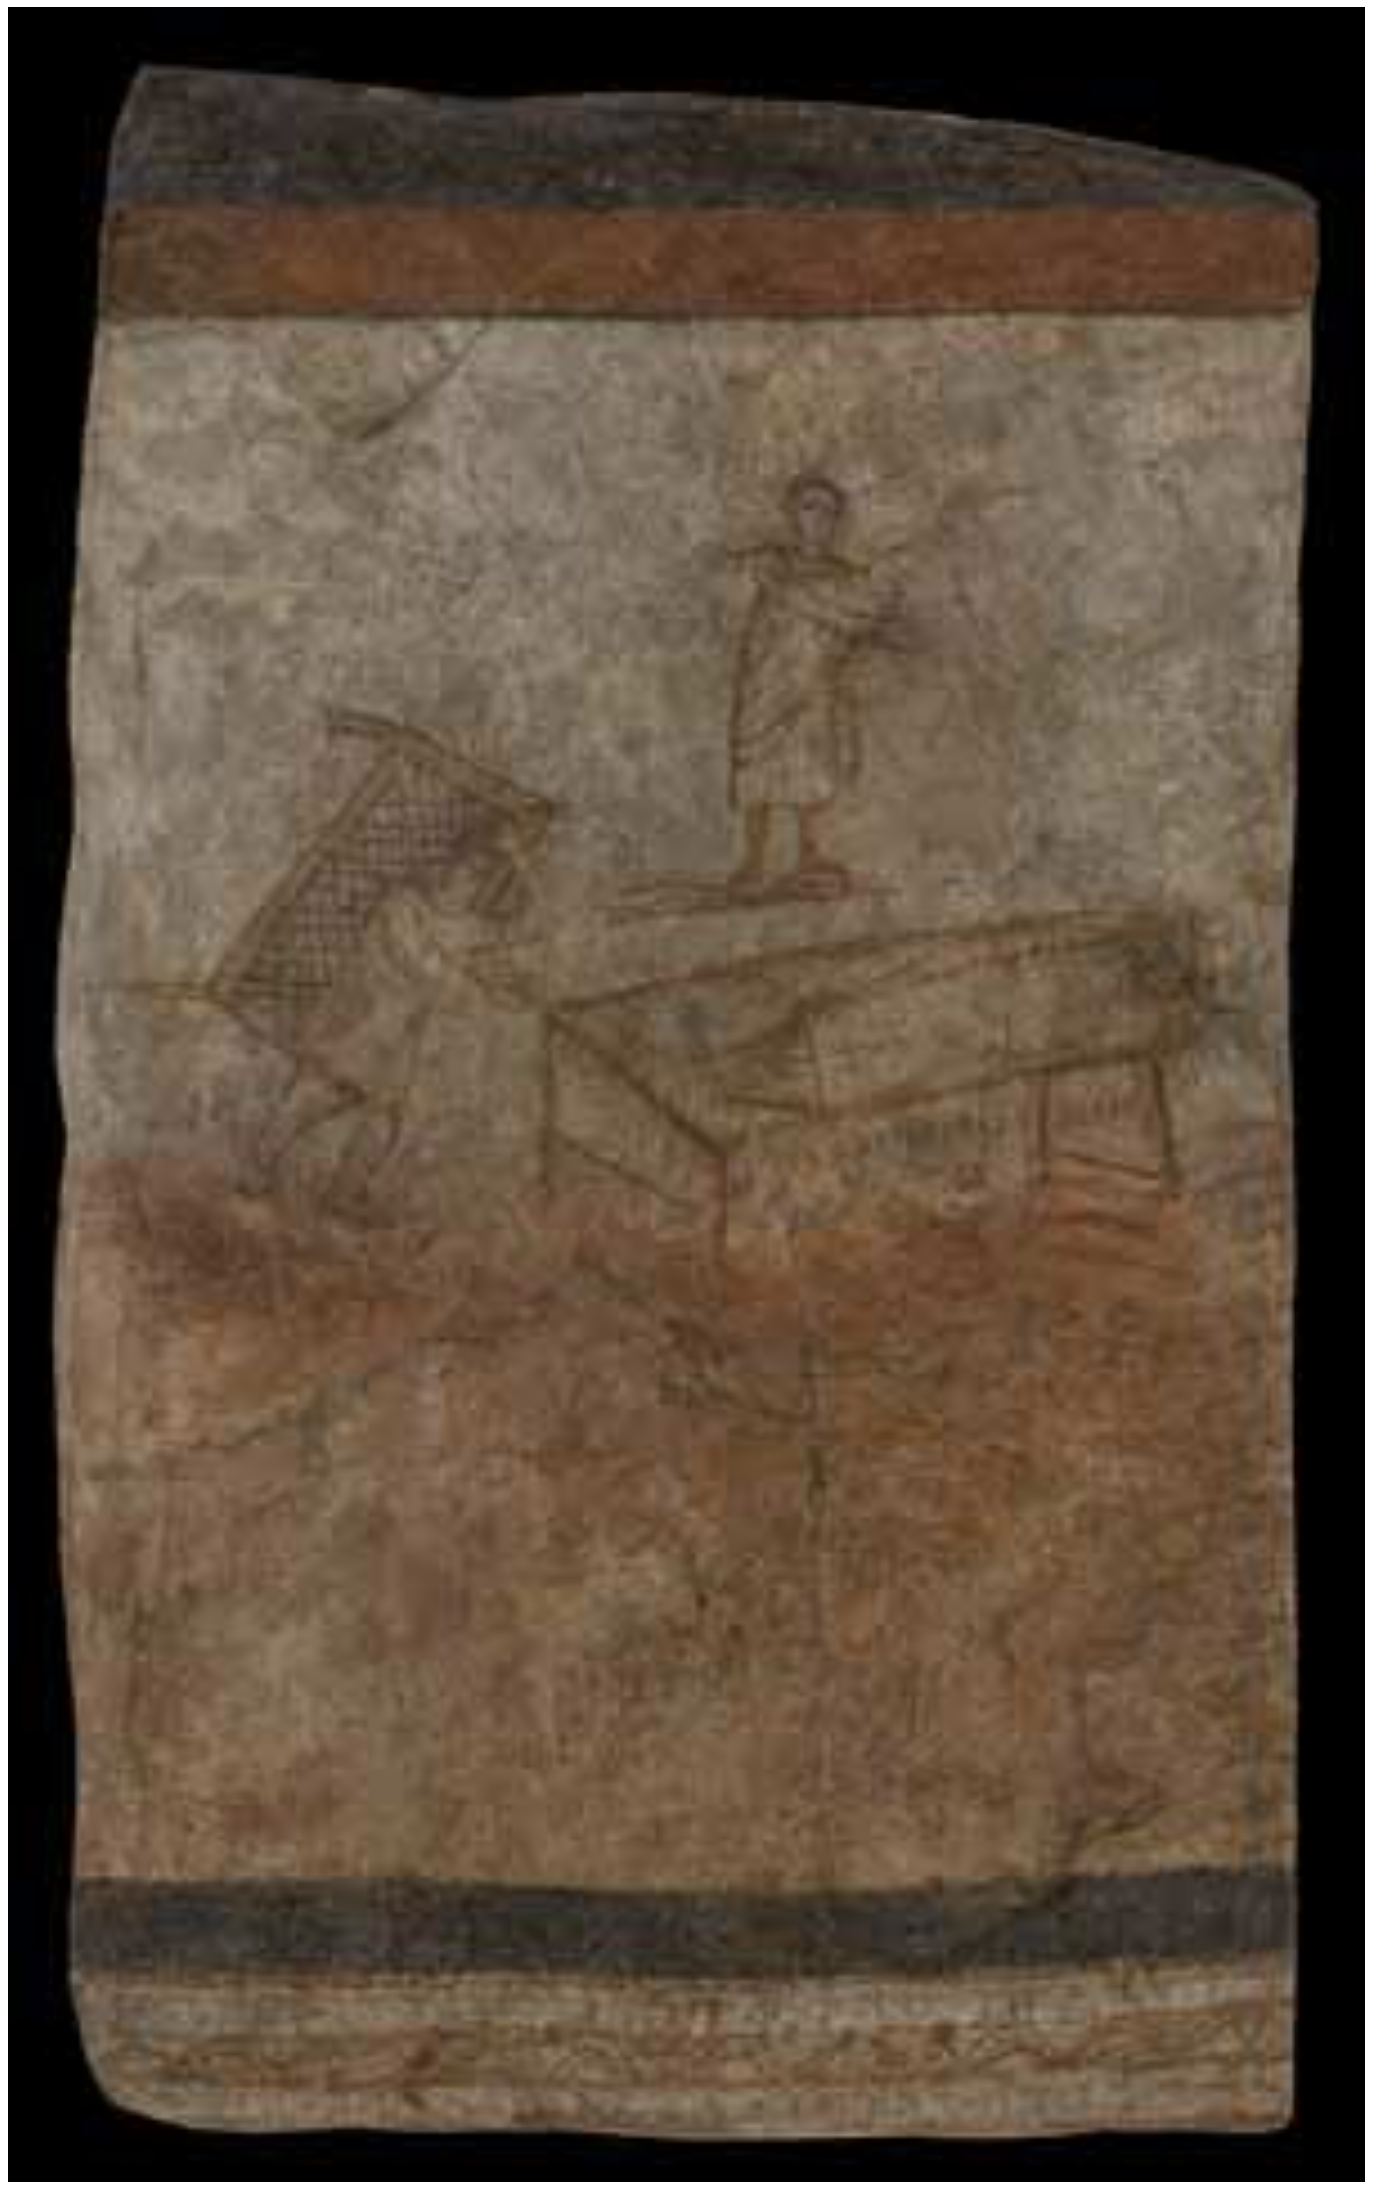 Fresque représentant la guérison d'un paralytique, Doura-Europos, IIIe siècle © Yaale University Art Gallery